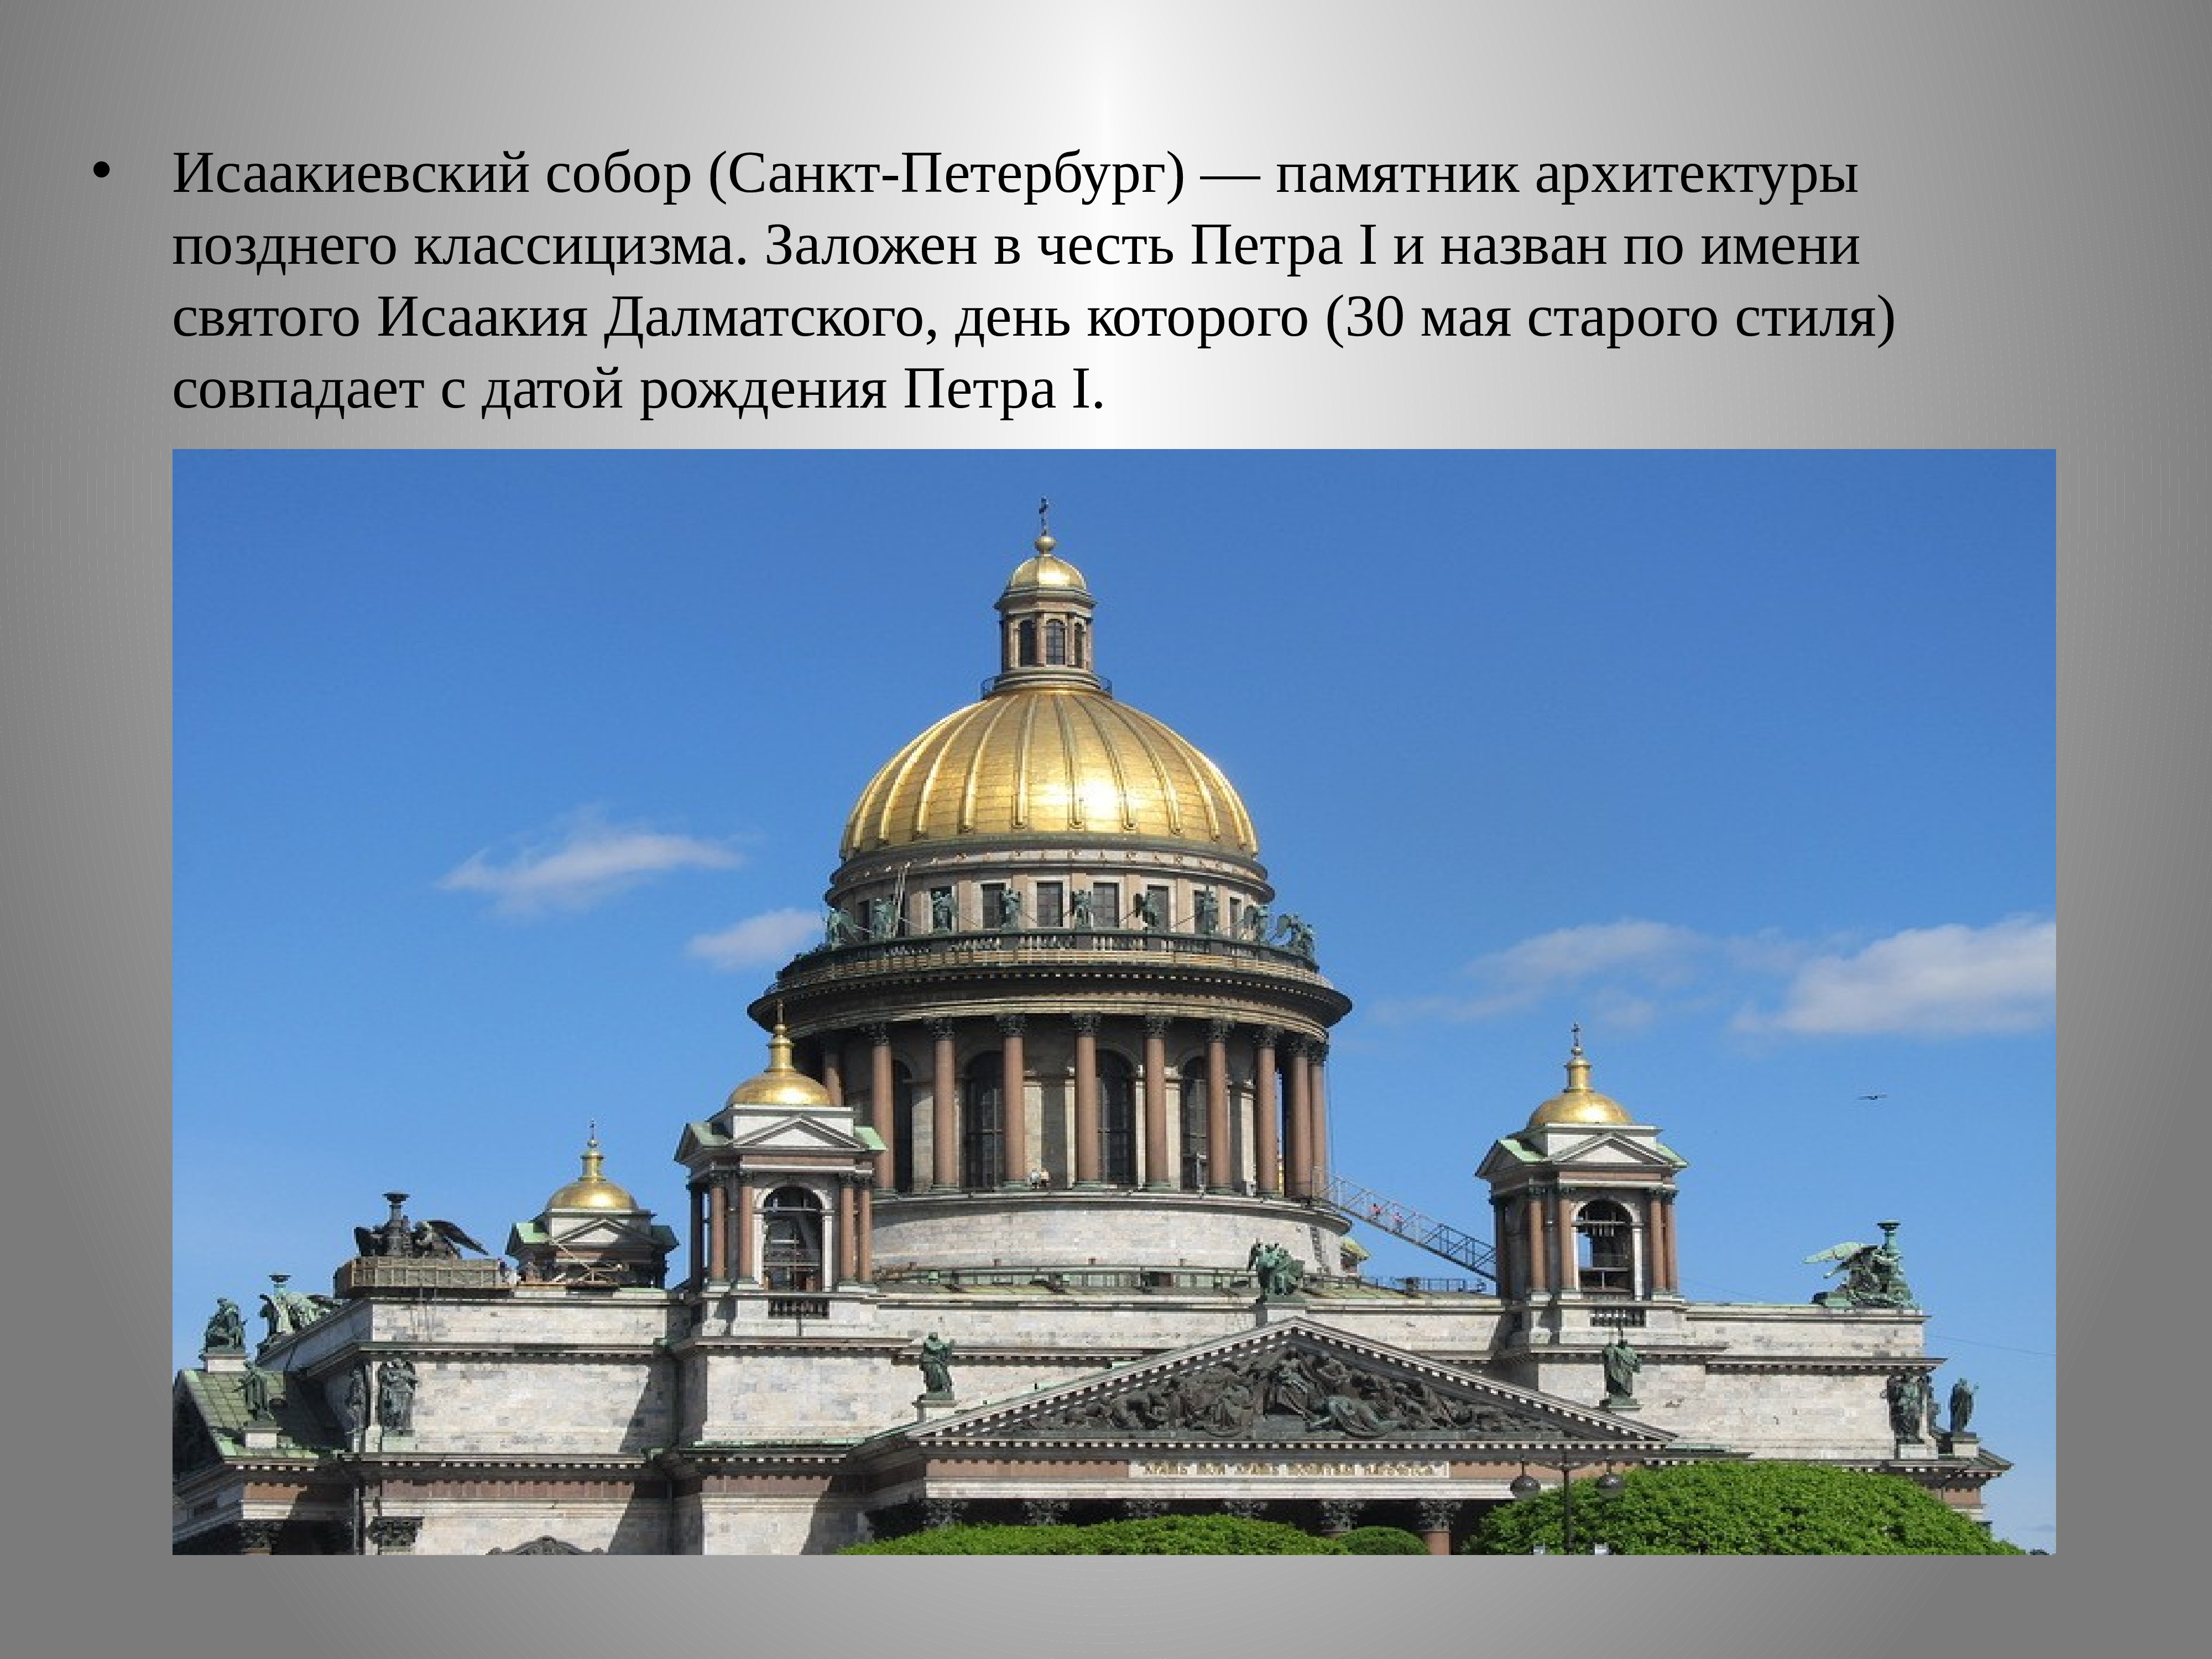 достопримечательности санкт петербурга фото и описание на